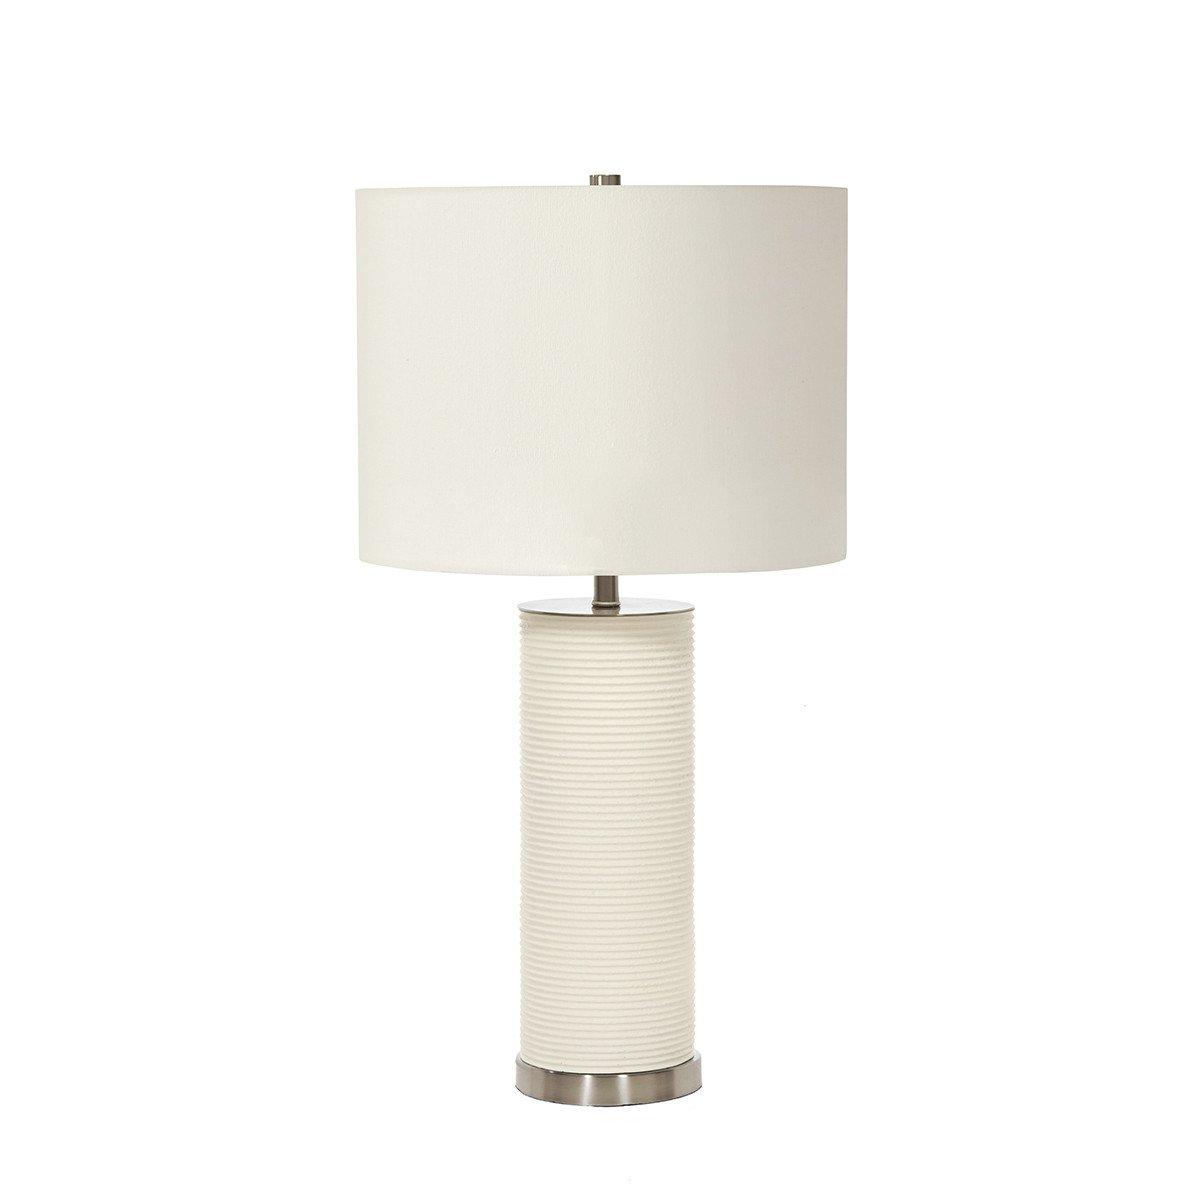 Ripple White 1 Light Table Lamp White E27